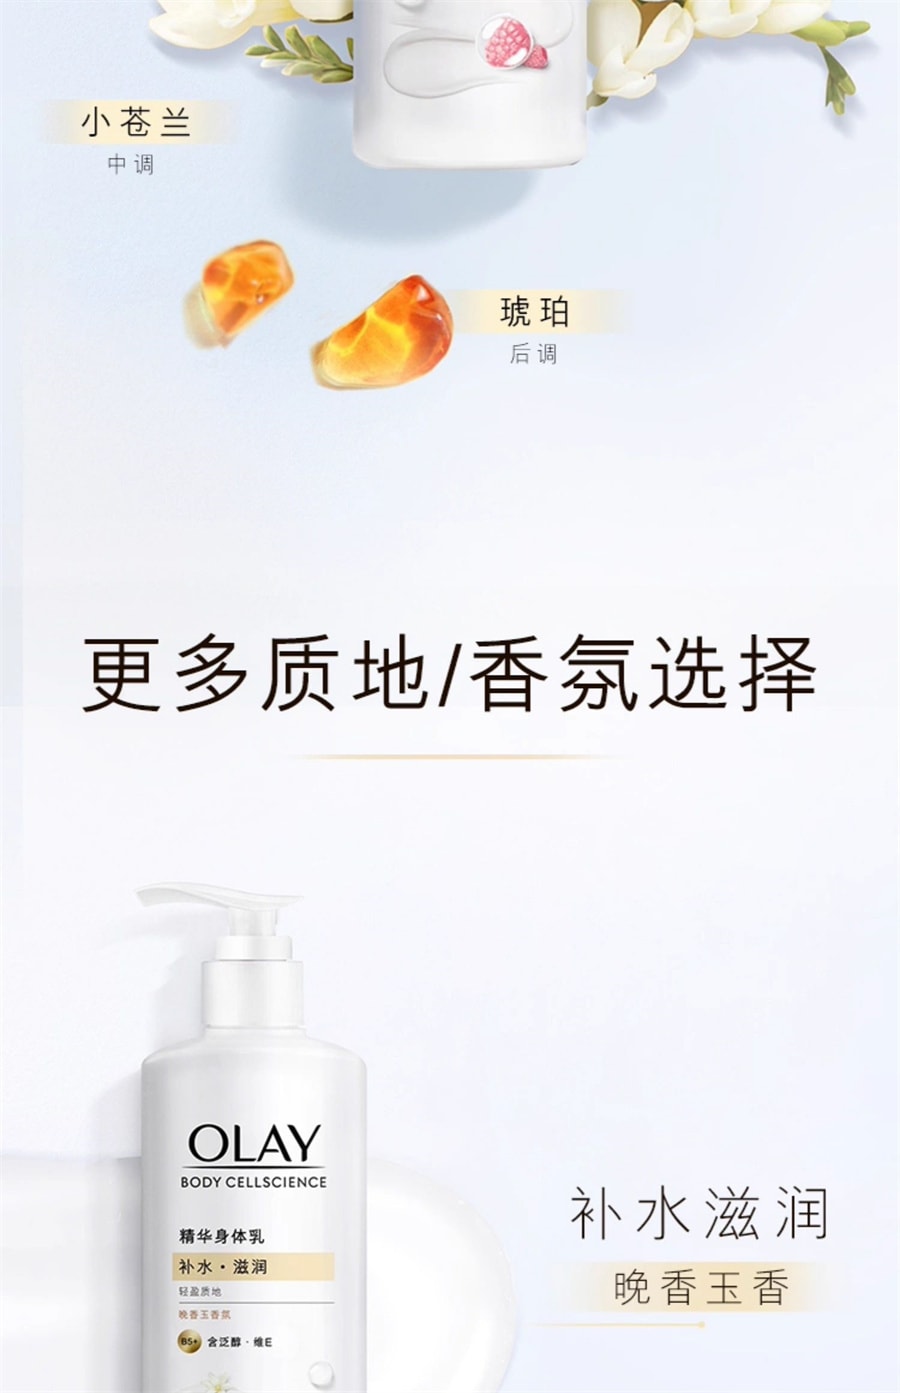 【中国直邮】OLAY玉兰油 新品烟酰胺身体乳男女士夏季保湿滋润 森林莓果260g